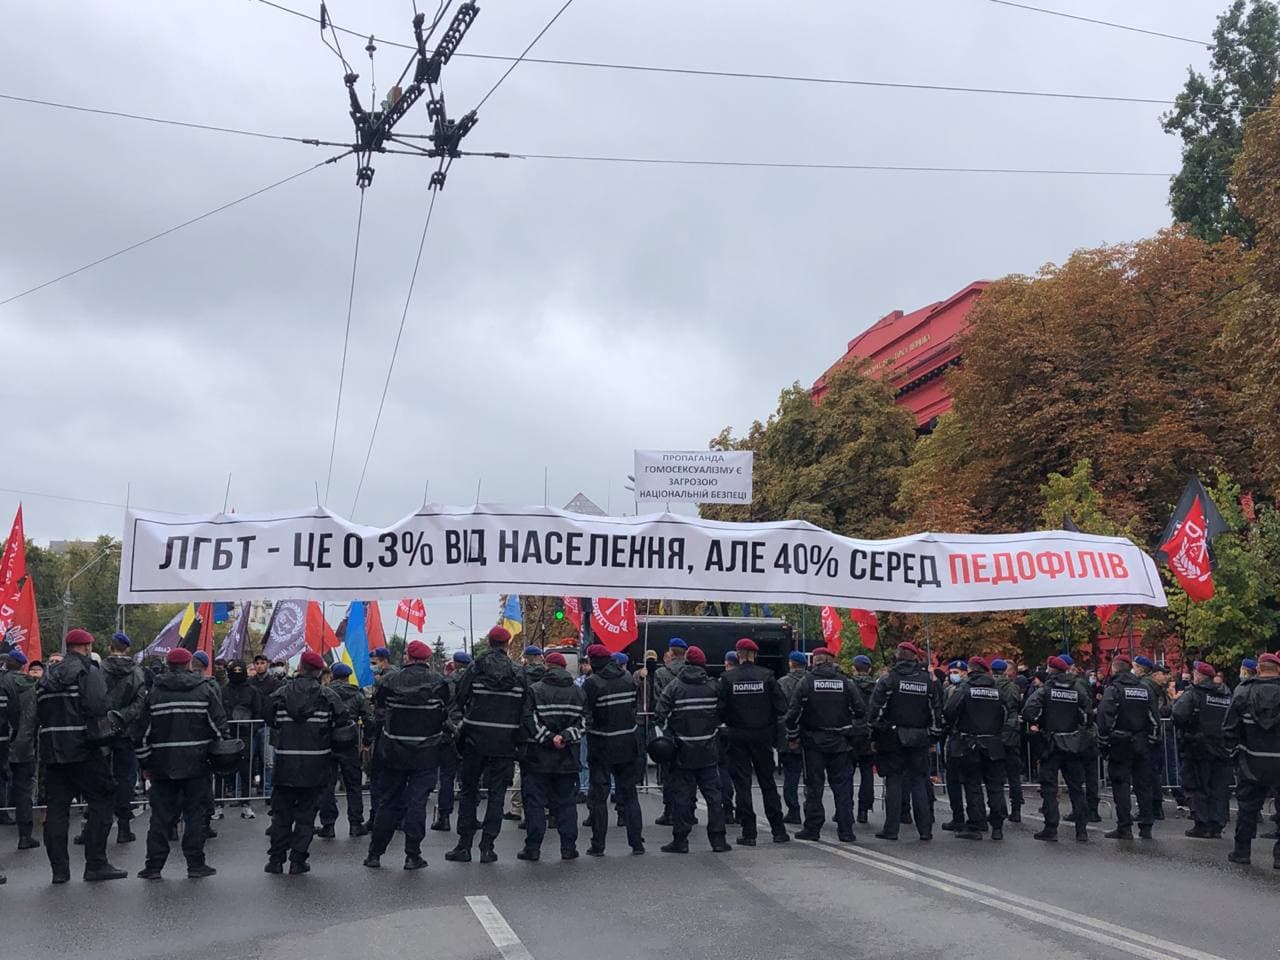 В Киеве проходит марш ЛГБТ: против него вышли националисты. Обновляется